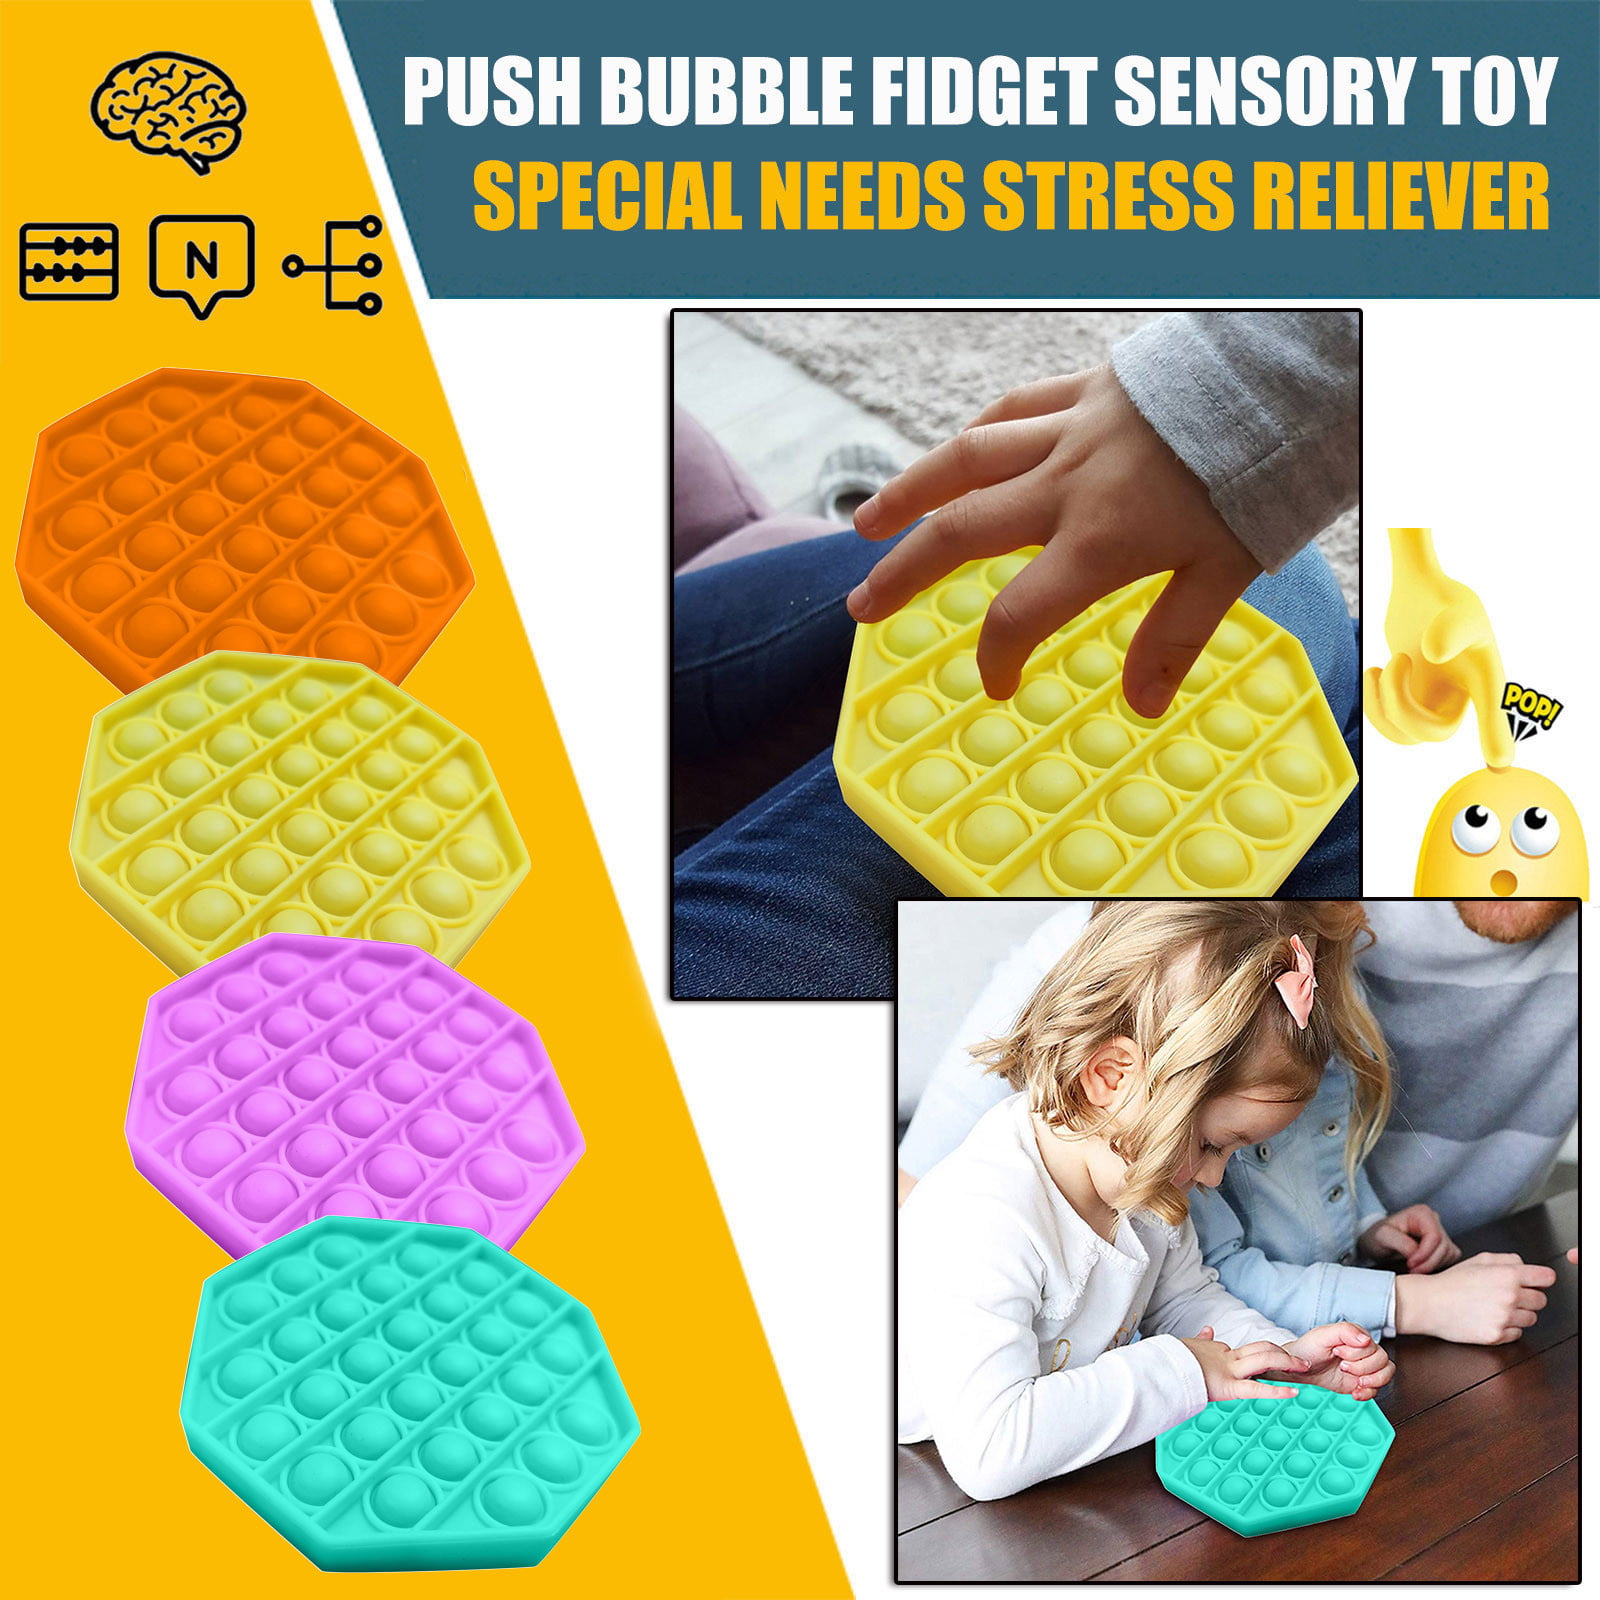 Details about   Push Pop Pop Bubble Fidget Sensory Toy Autism Special Needs Stress Reliever 2020 